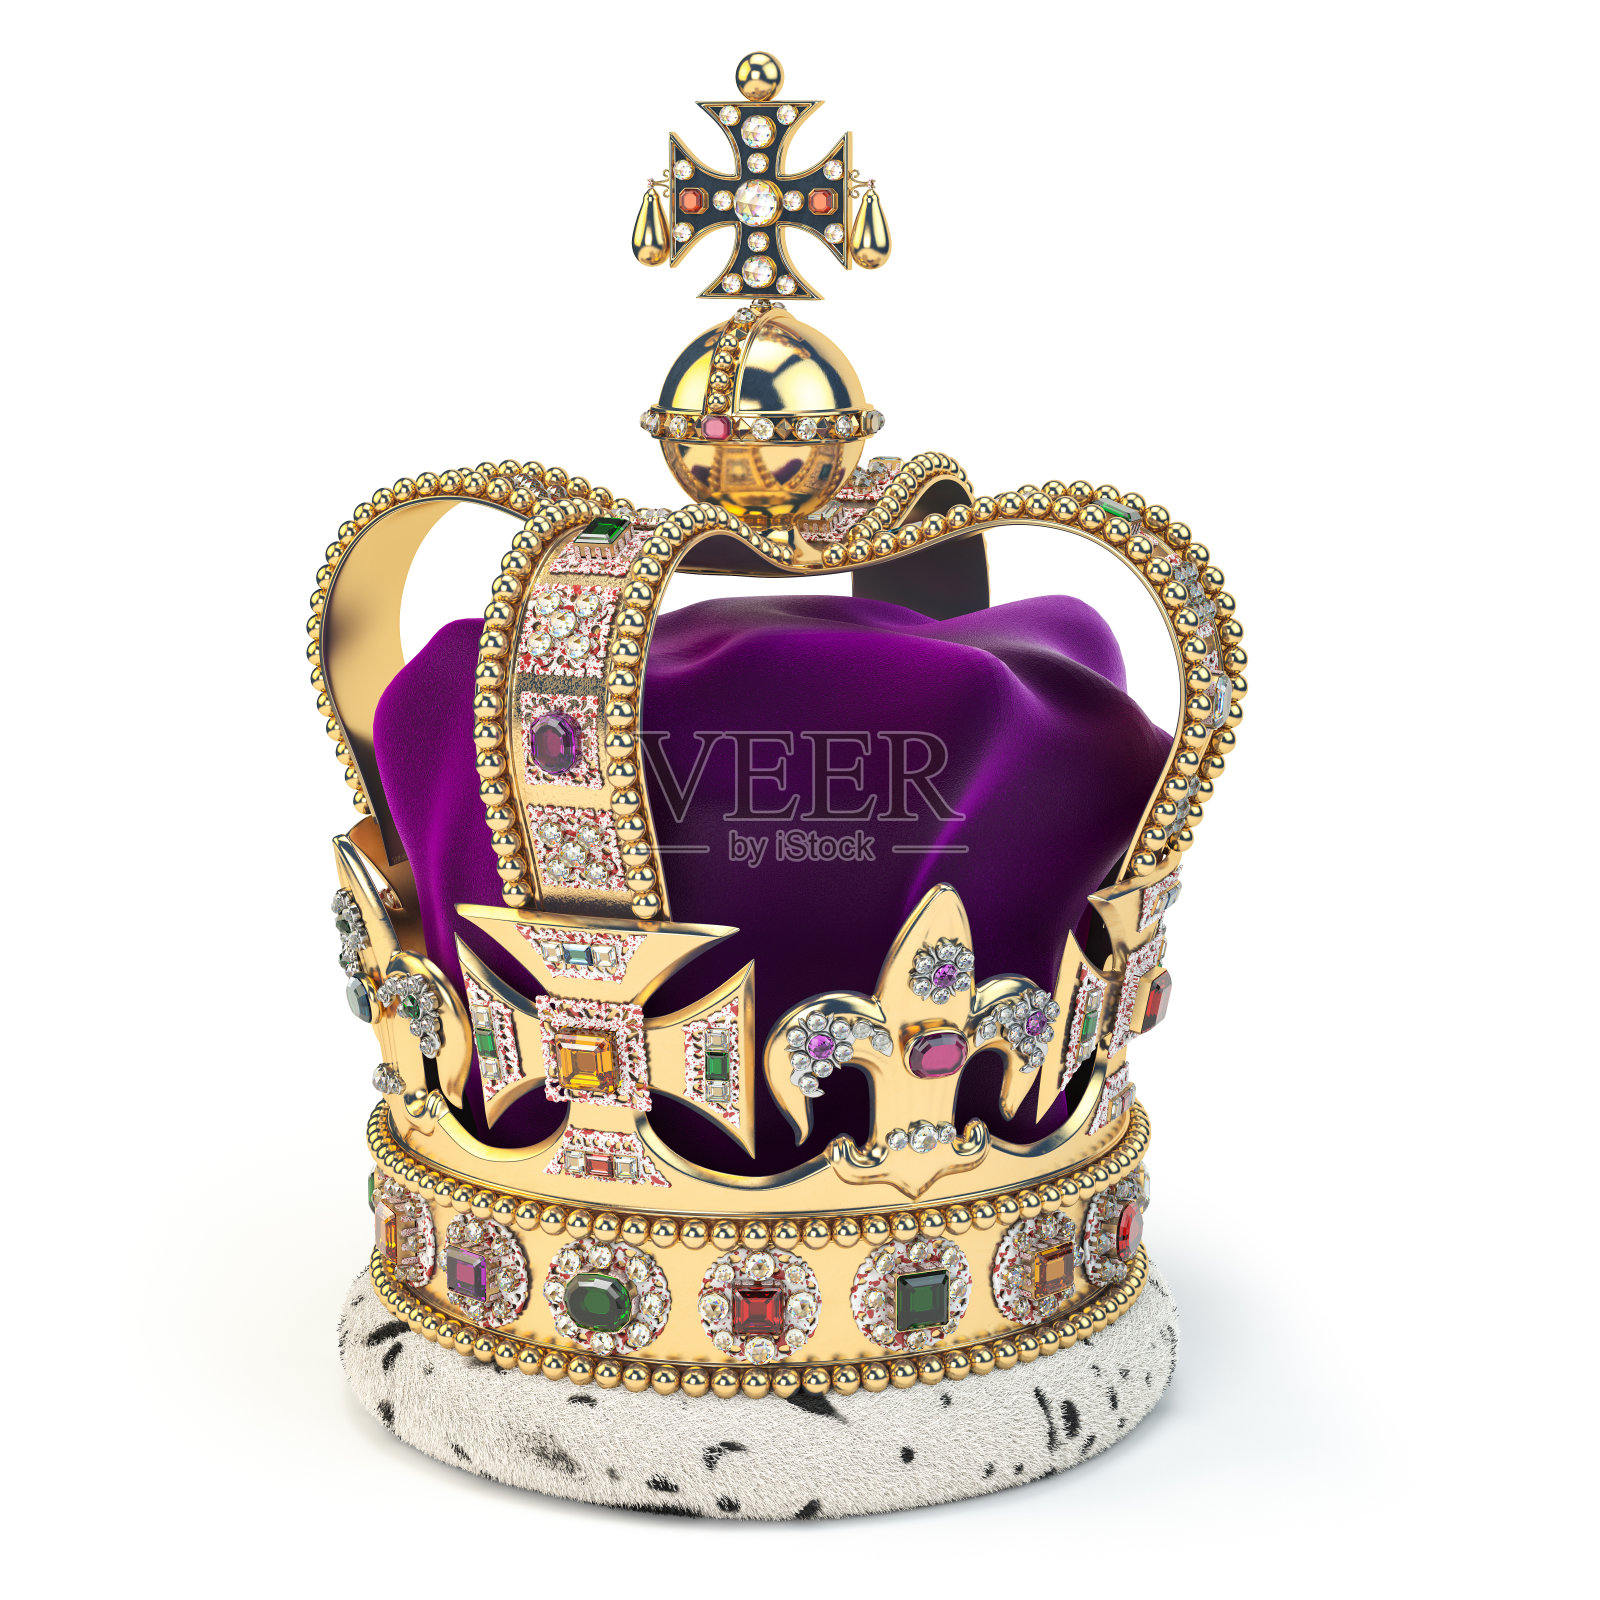 金色的皇冠上镶嵌着宝石。英国王室是英国君主制的象征。照片摄影图片